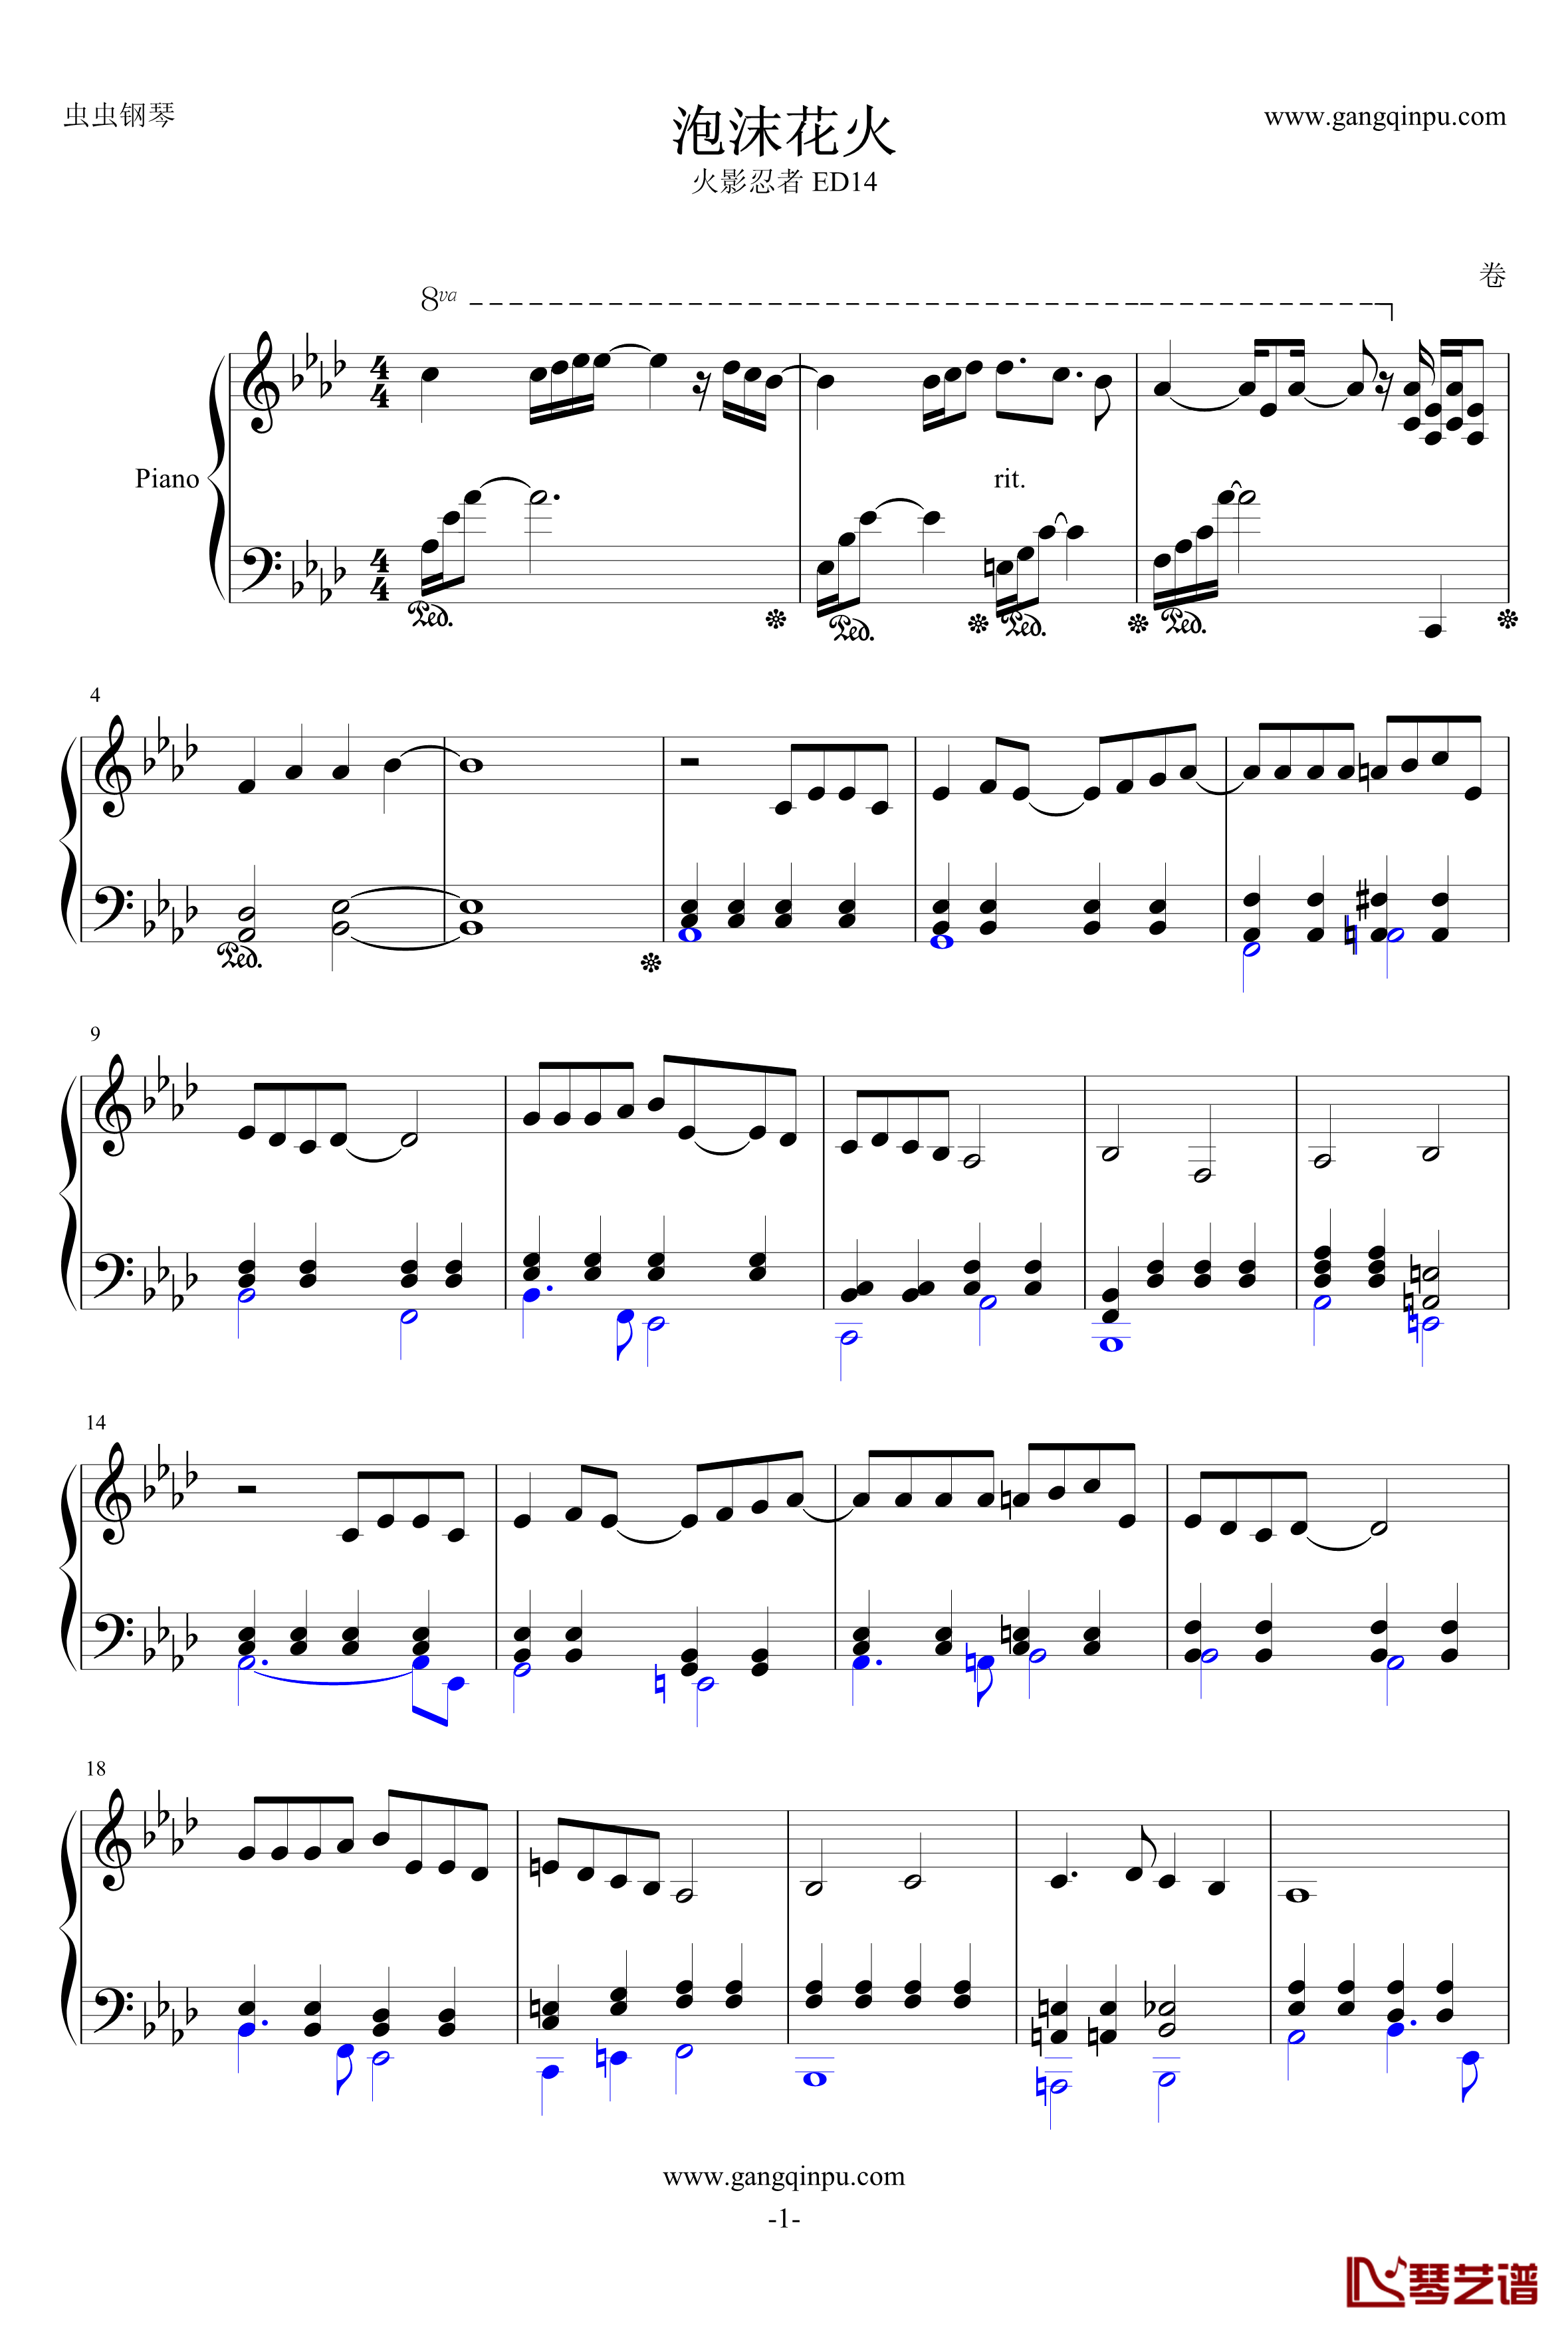 泡沫花火钢琴谱-完整版-火影忍者ED141